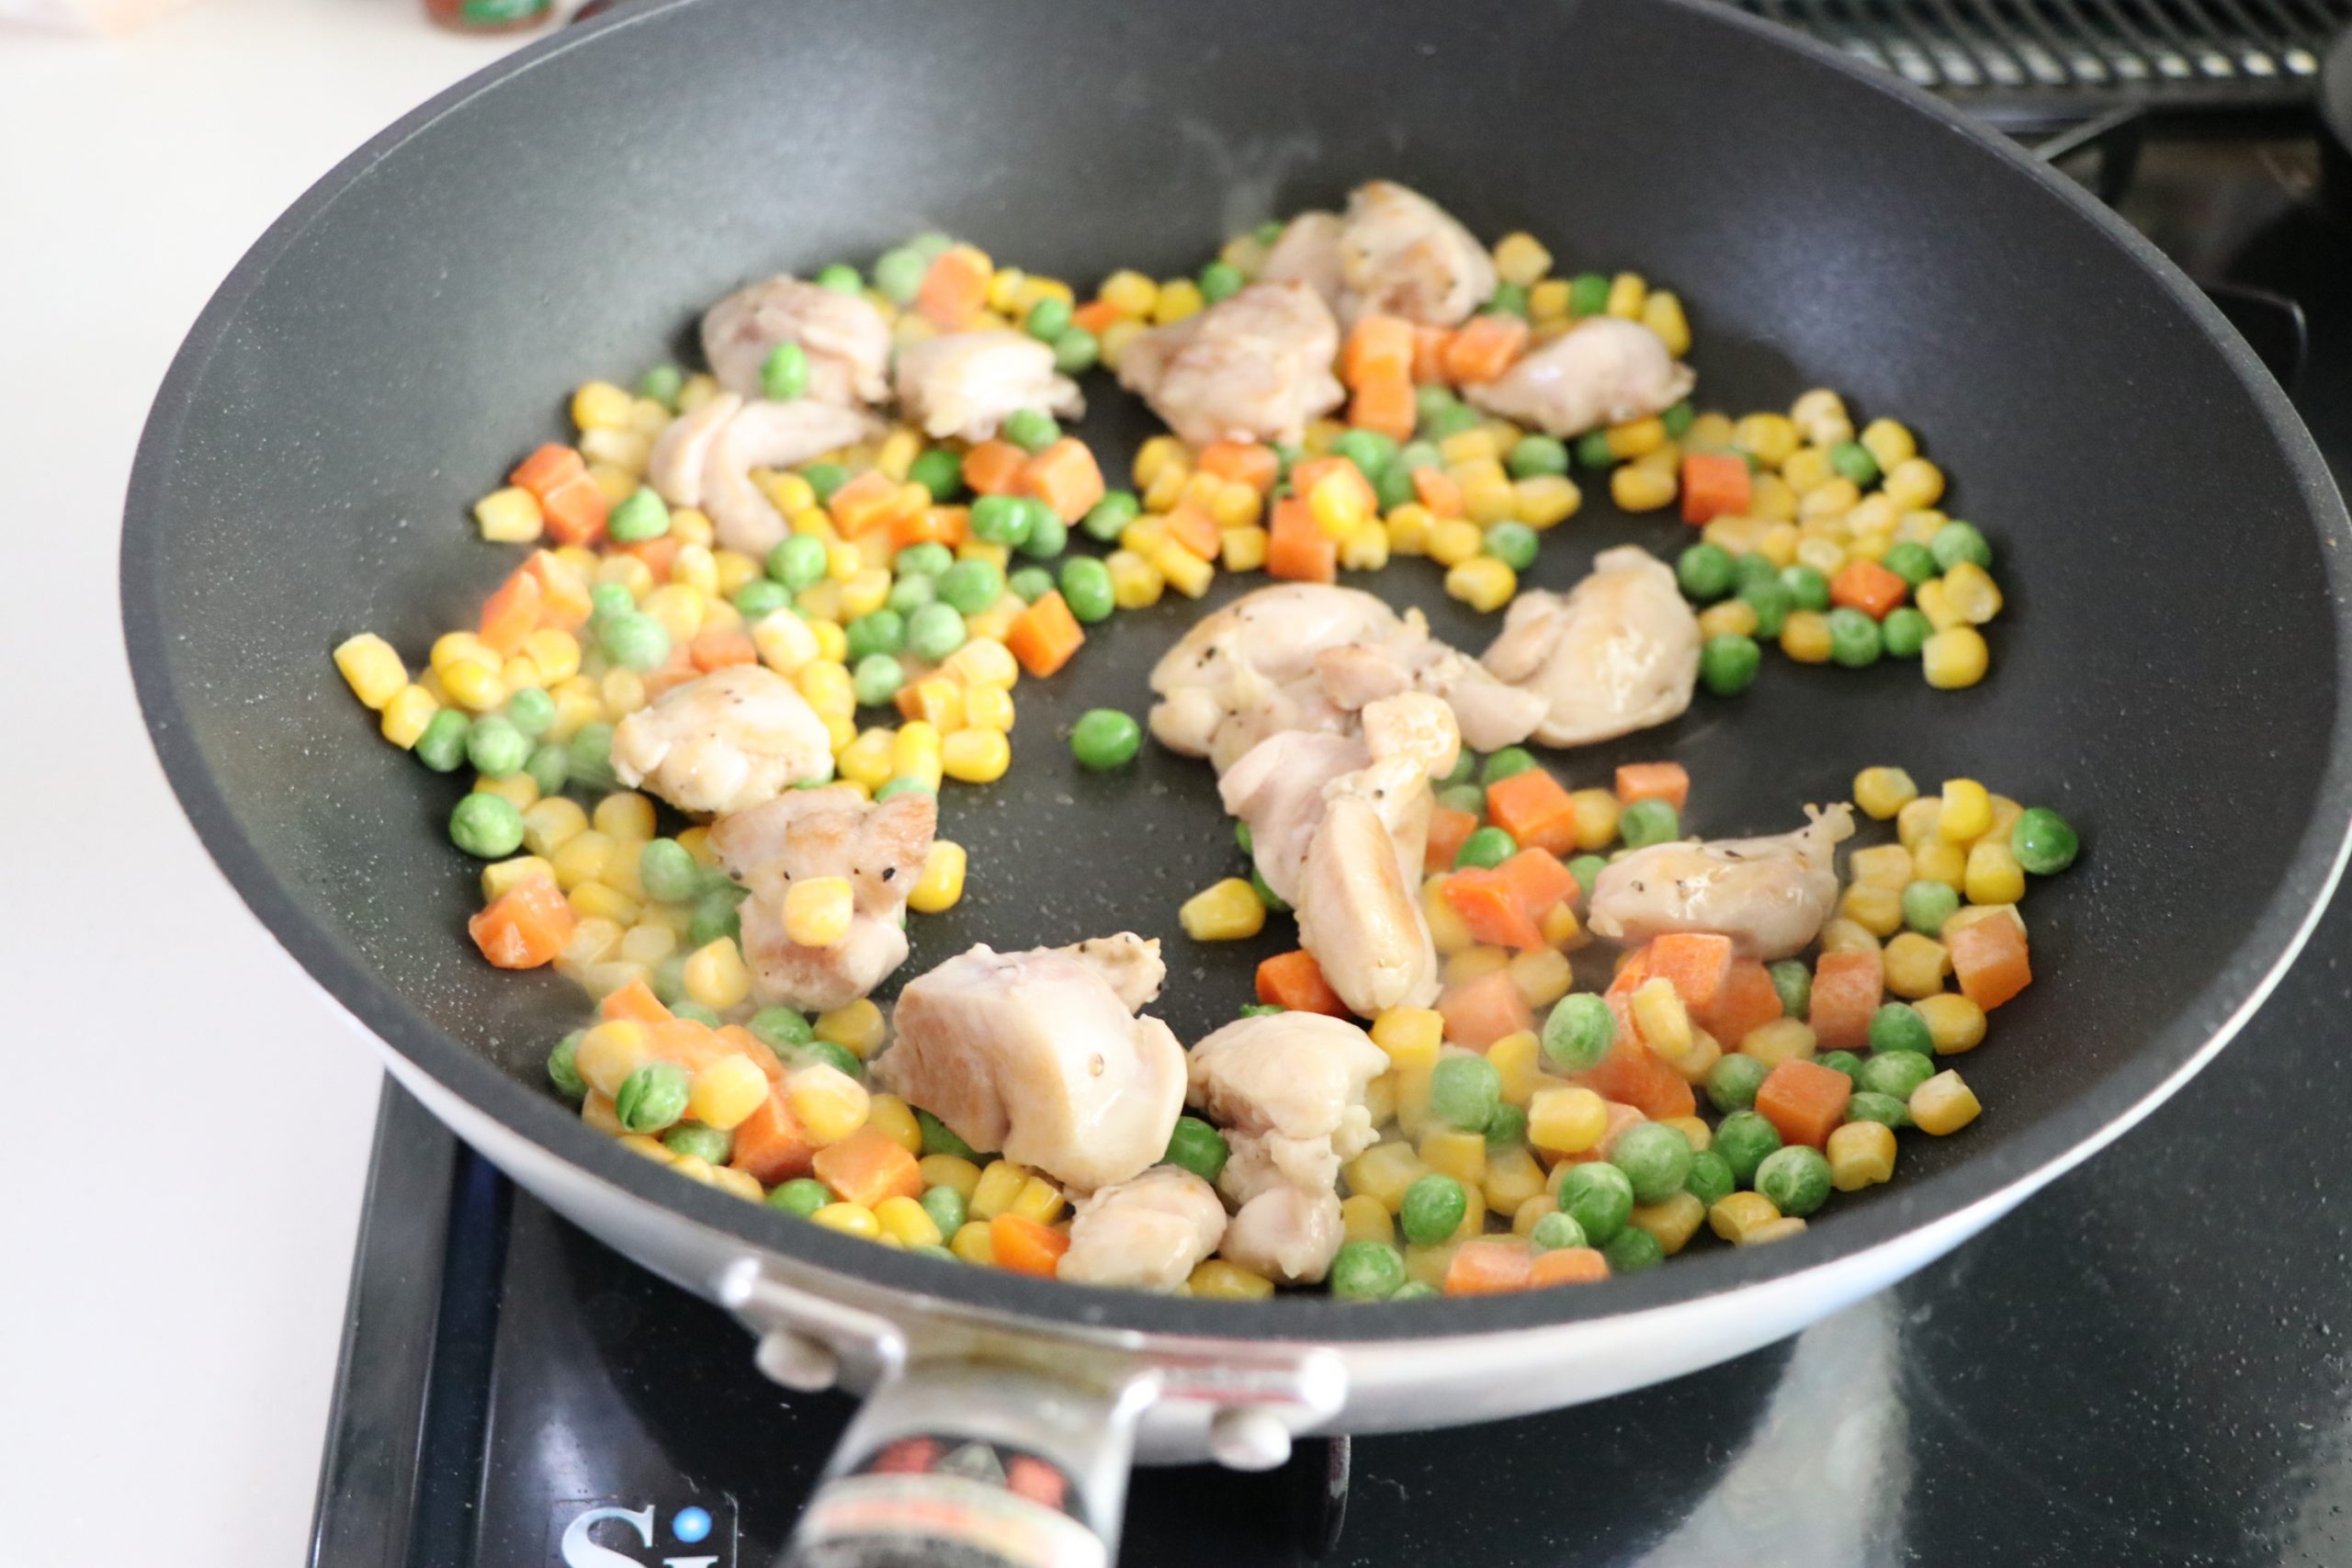 熱したフライパンにオリーブオイルをひき、下味をつけた鶏もも肉を焼く。
火が通ったら、ミックスベジタブルを加えてさっと炒める。
